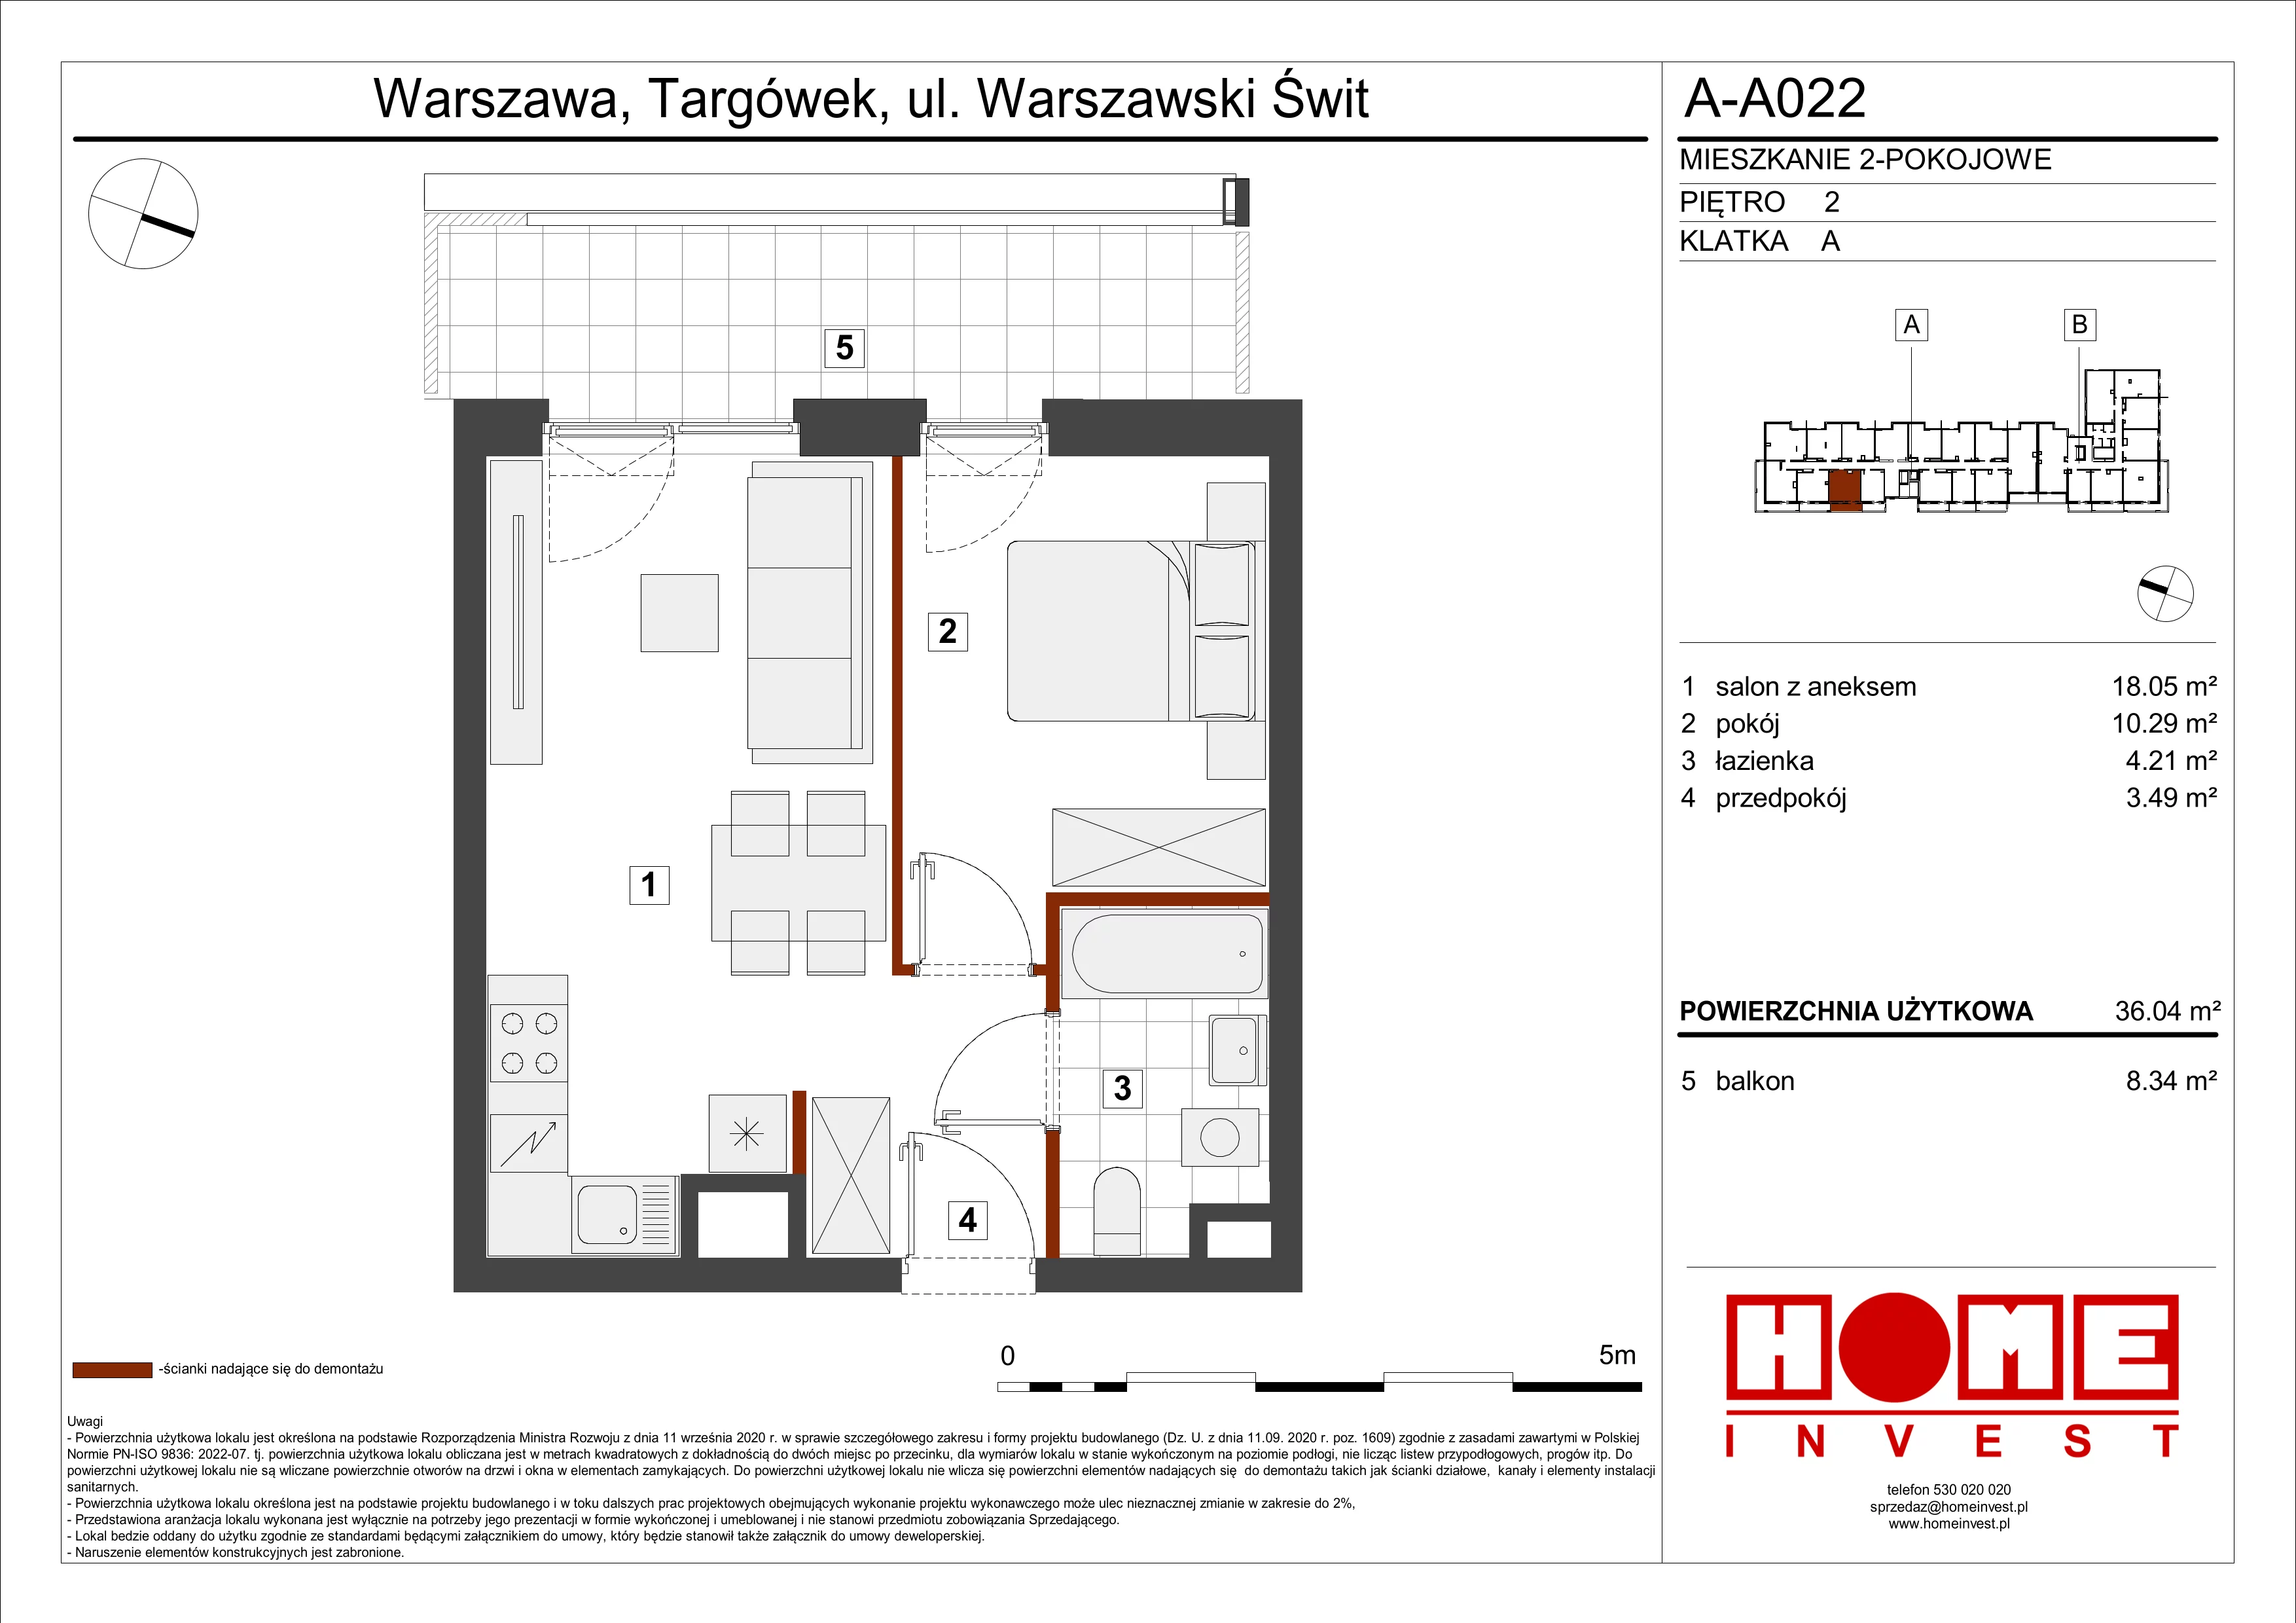 Mieszkanie 36,04 m², piętro 2, oferta nr A-A022, Warszawski Świt, Warszawa, Targówek, Bródno, ul. Warszawski Świt 5